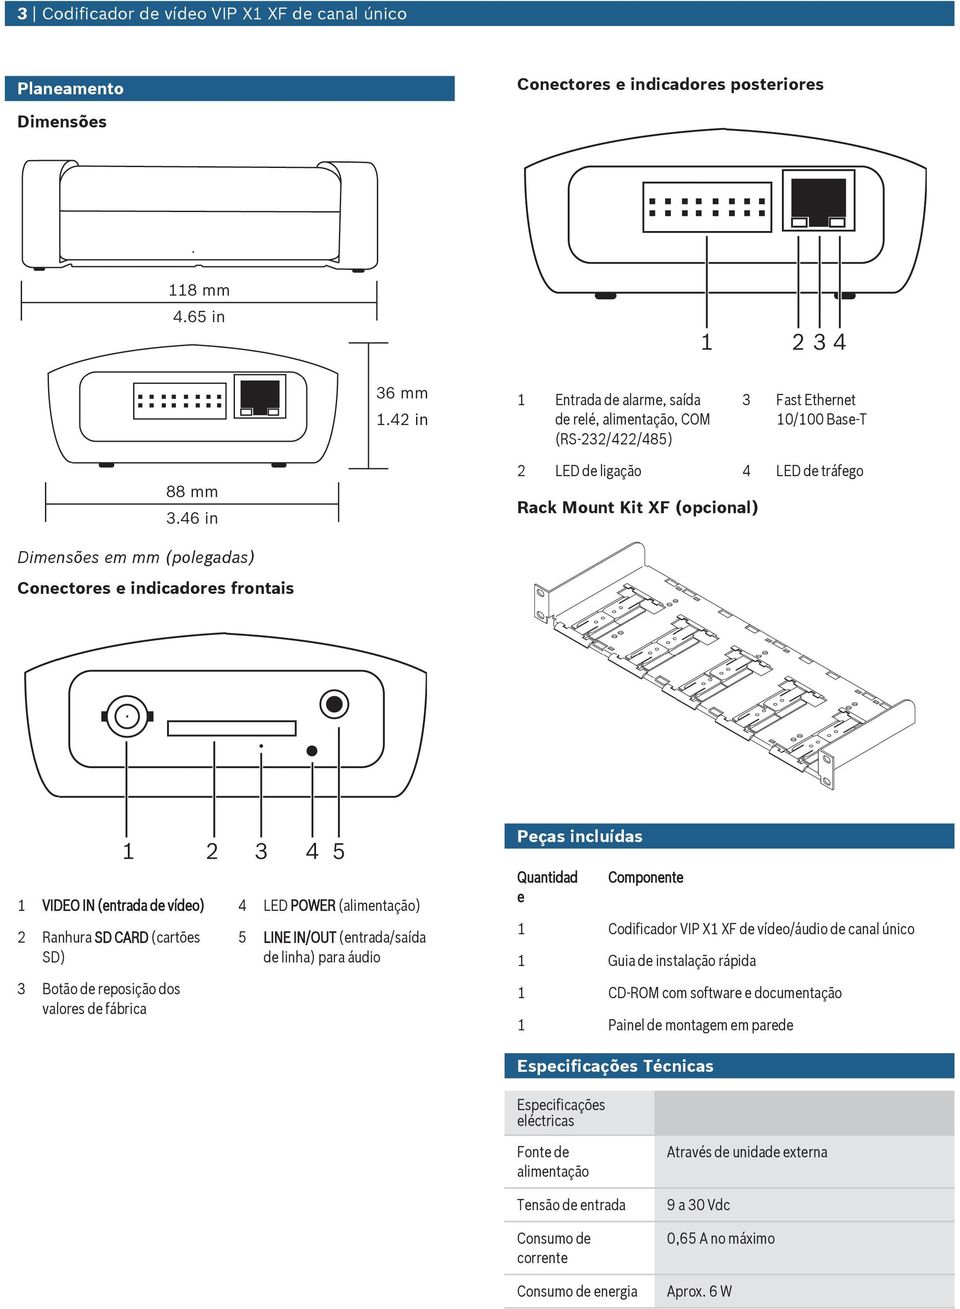 (alimentação) 2 Ranhra SD CARD (cartões SD) 3 Botão de reposição dos valores de fábrica 5 LINE IN/OUT (entrada/saída de linha) para ádio Qantidad e Componente 1 Codificador VIP X1 XF de vídeo/ádio de